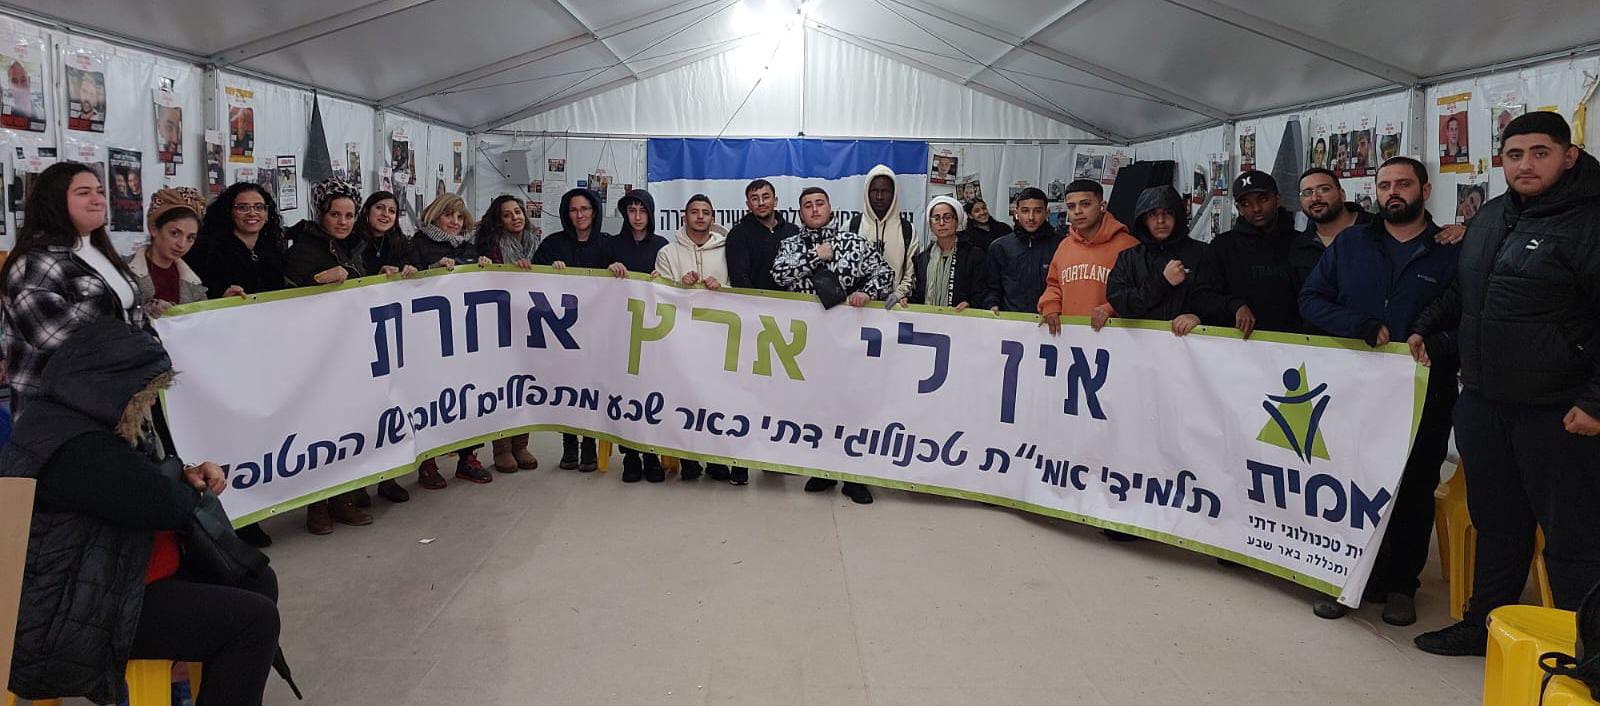 לא שוכחים את החטופים: התלמידים מבאר שבע הגיעו לכיכר החטופים בתל אביב